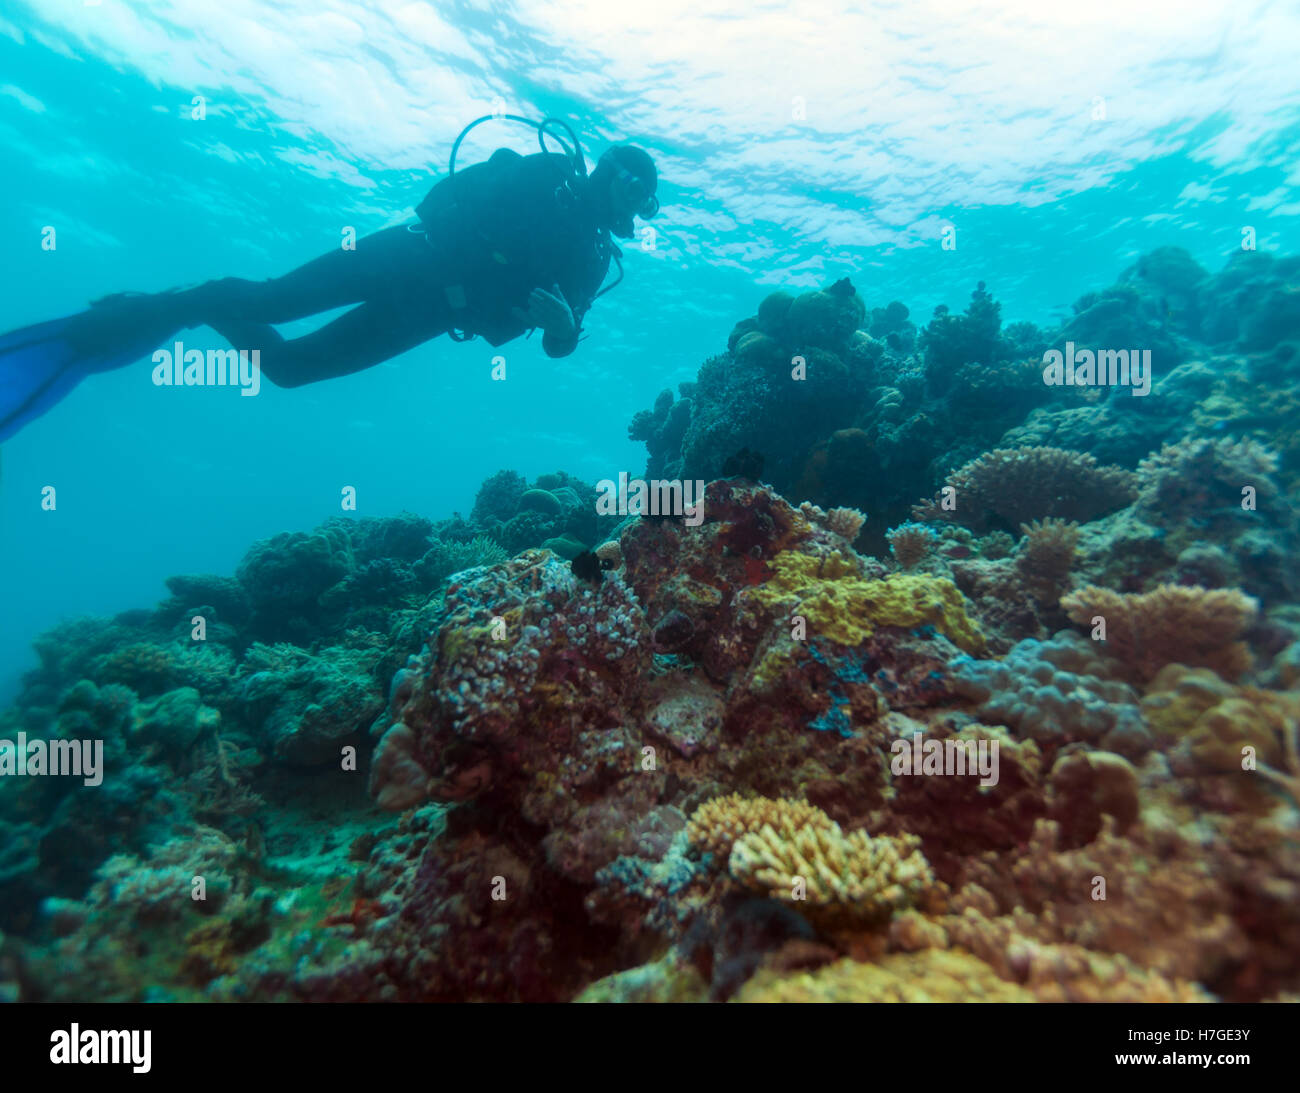 Silhouette of Man-plongeur entre surface de l'eau et de fonds marins, les Maldives Banque D'Images